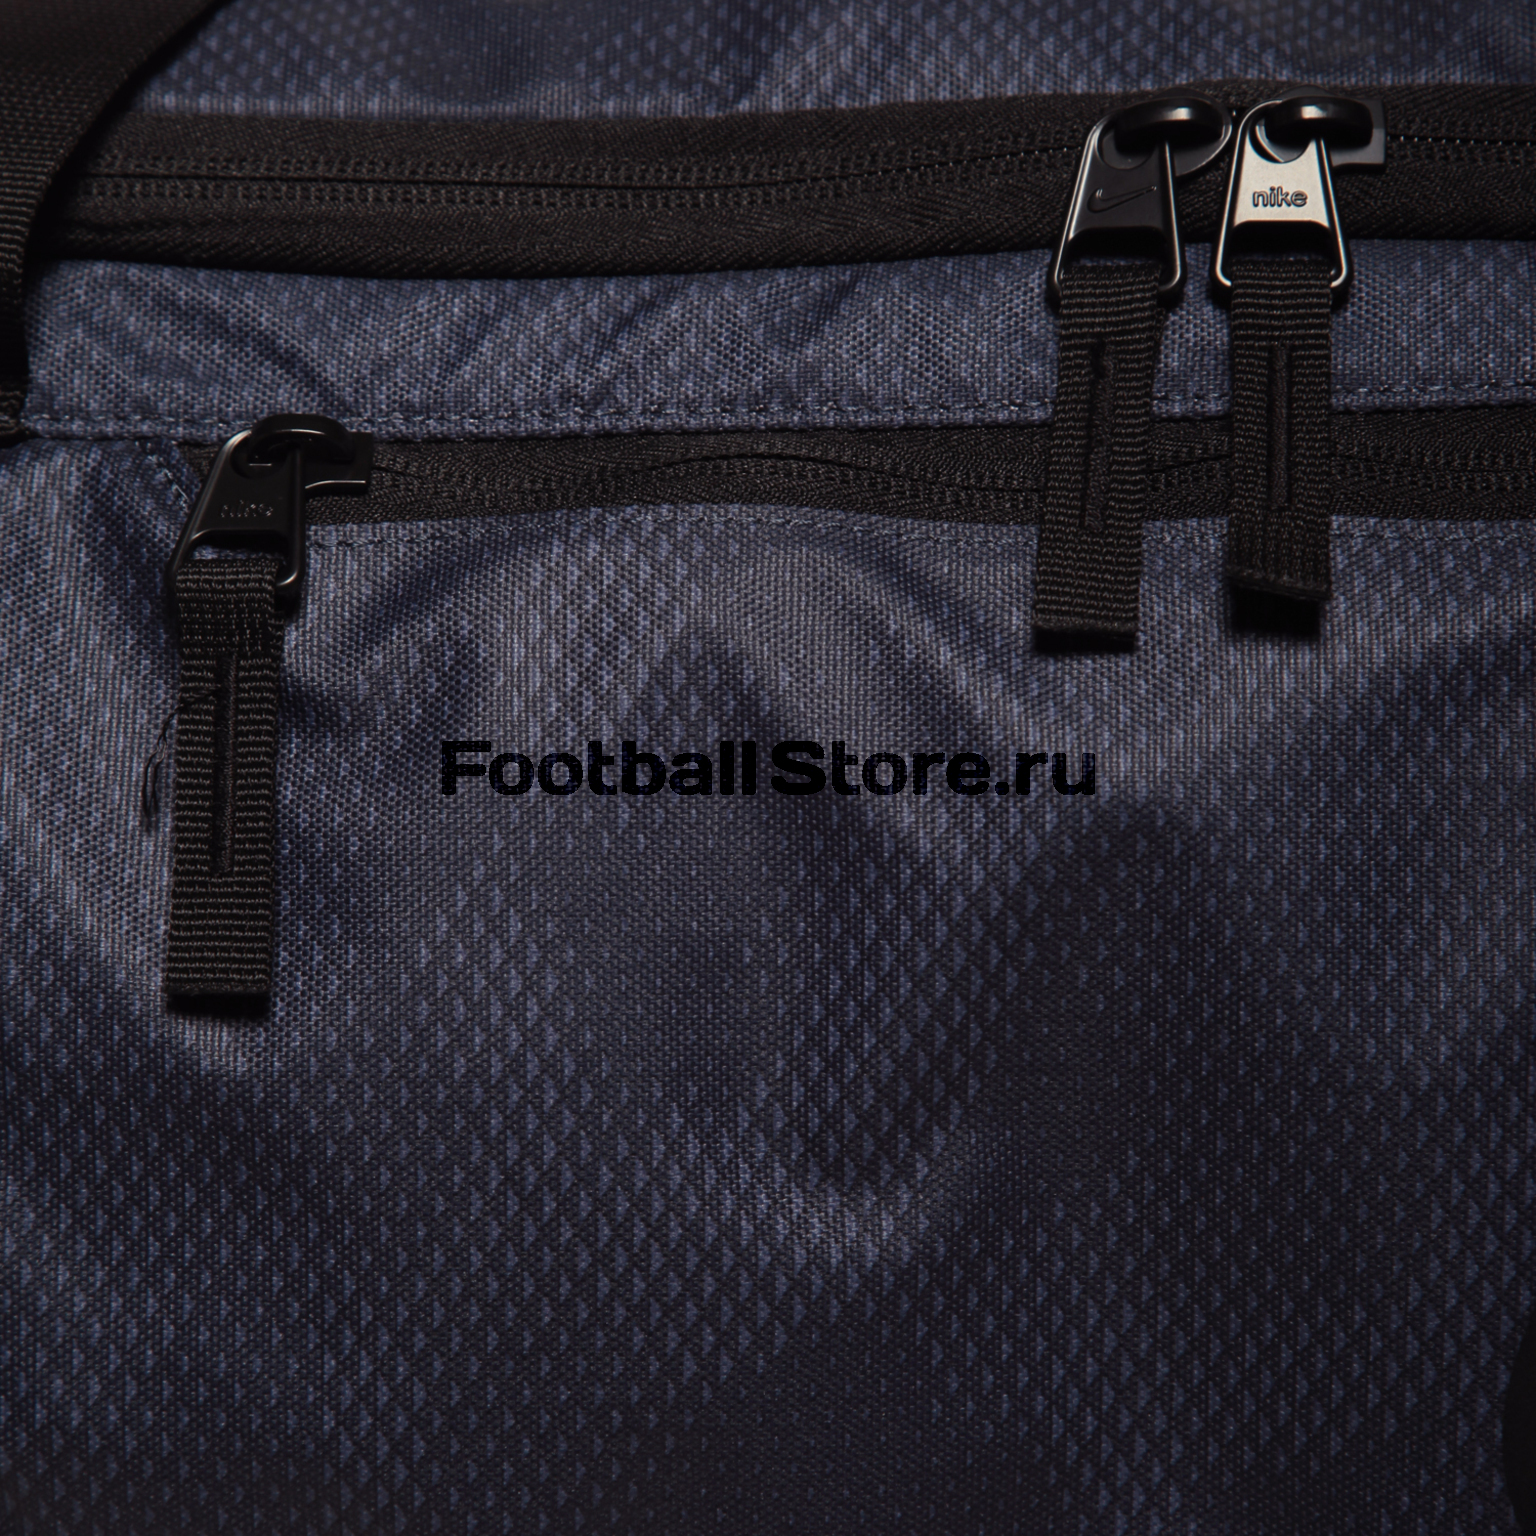 Сумка Nike Alpha M Duffel Bag BA5179-471